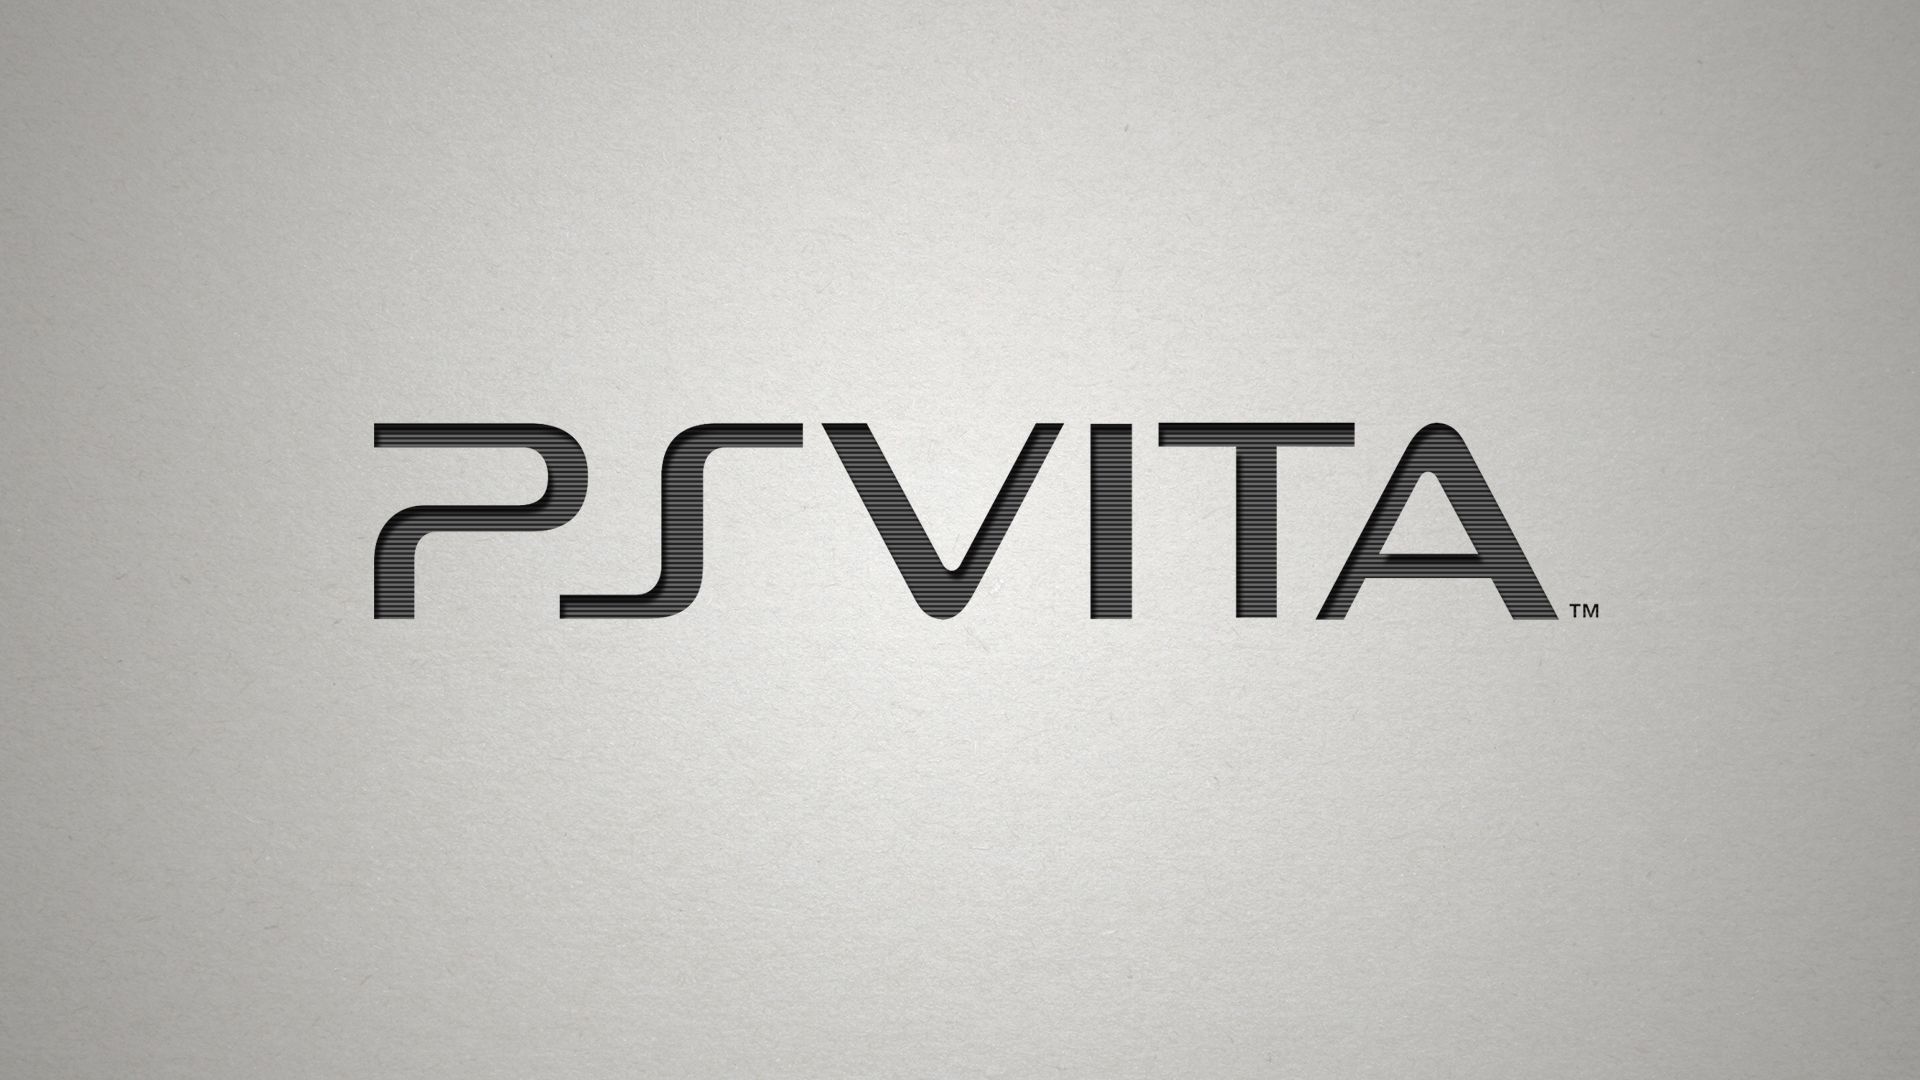 Los mejores fondos de pantalla de Playstation Vita para la pantalla del teléfono